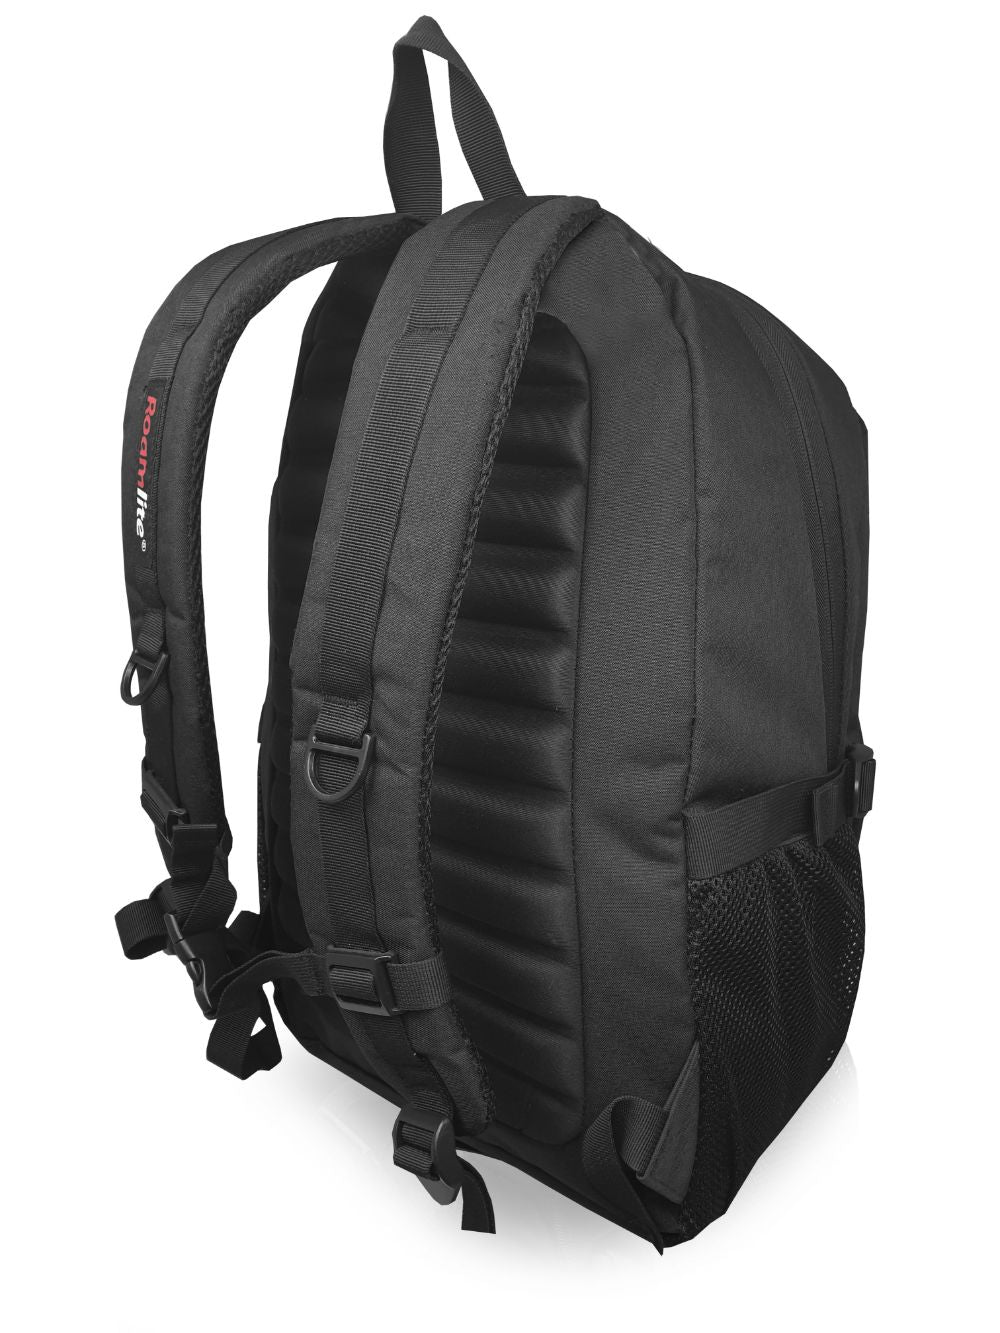 Roamlite Work Laptop Backpack black rl44 back